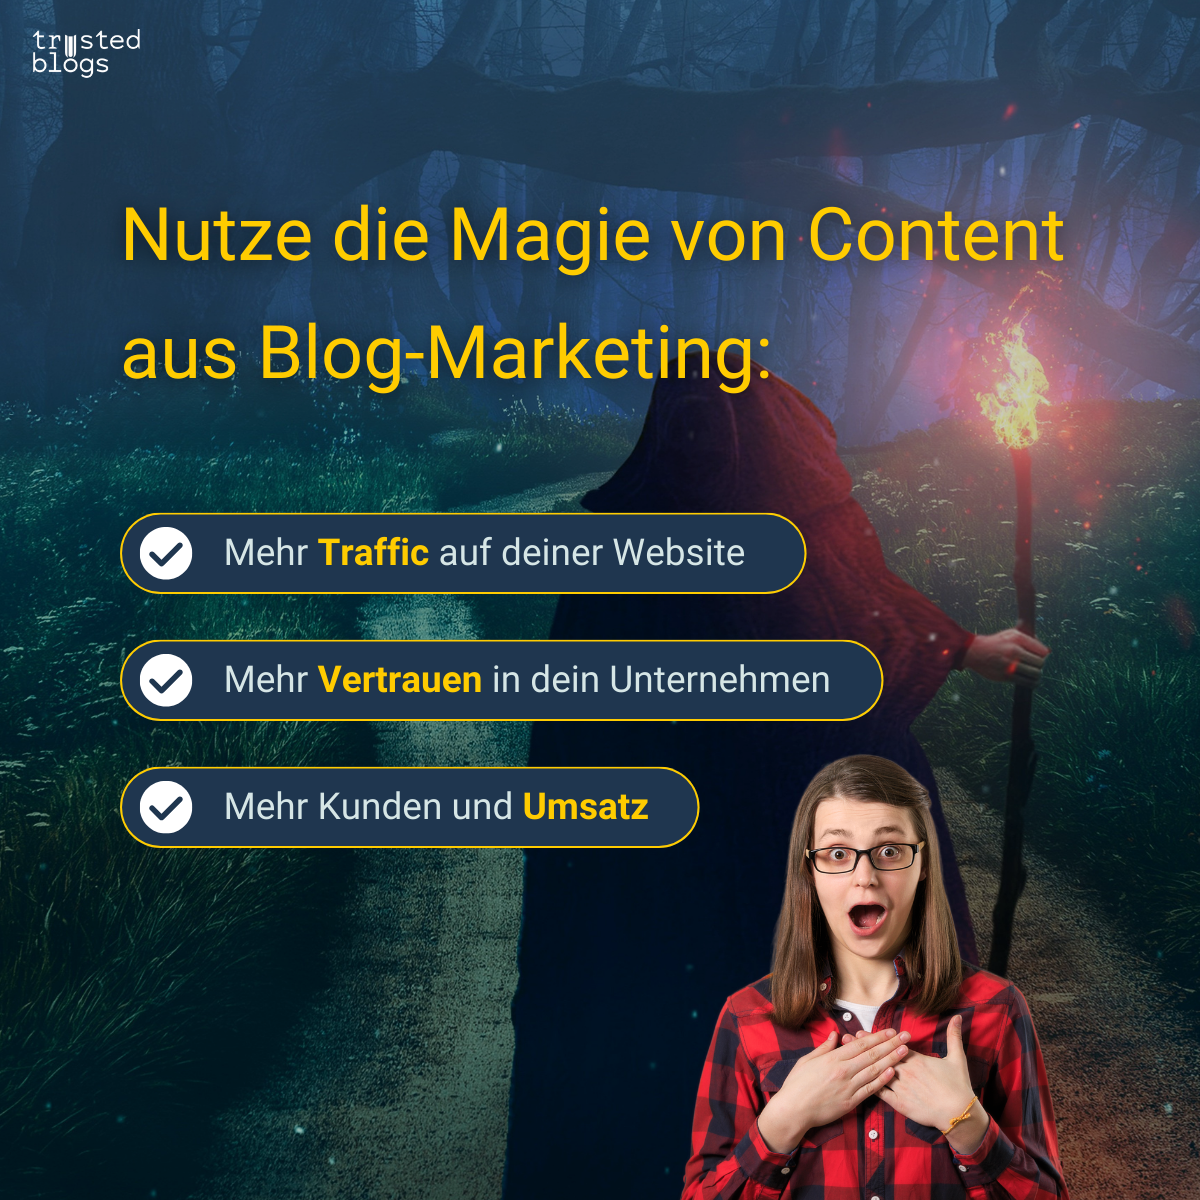 Nutze die Magie von Content aus Blog-Marketing